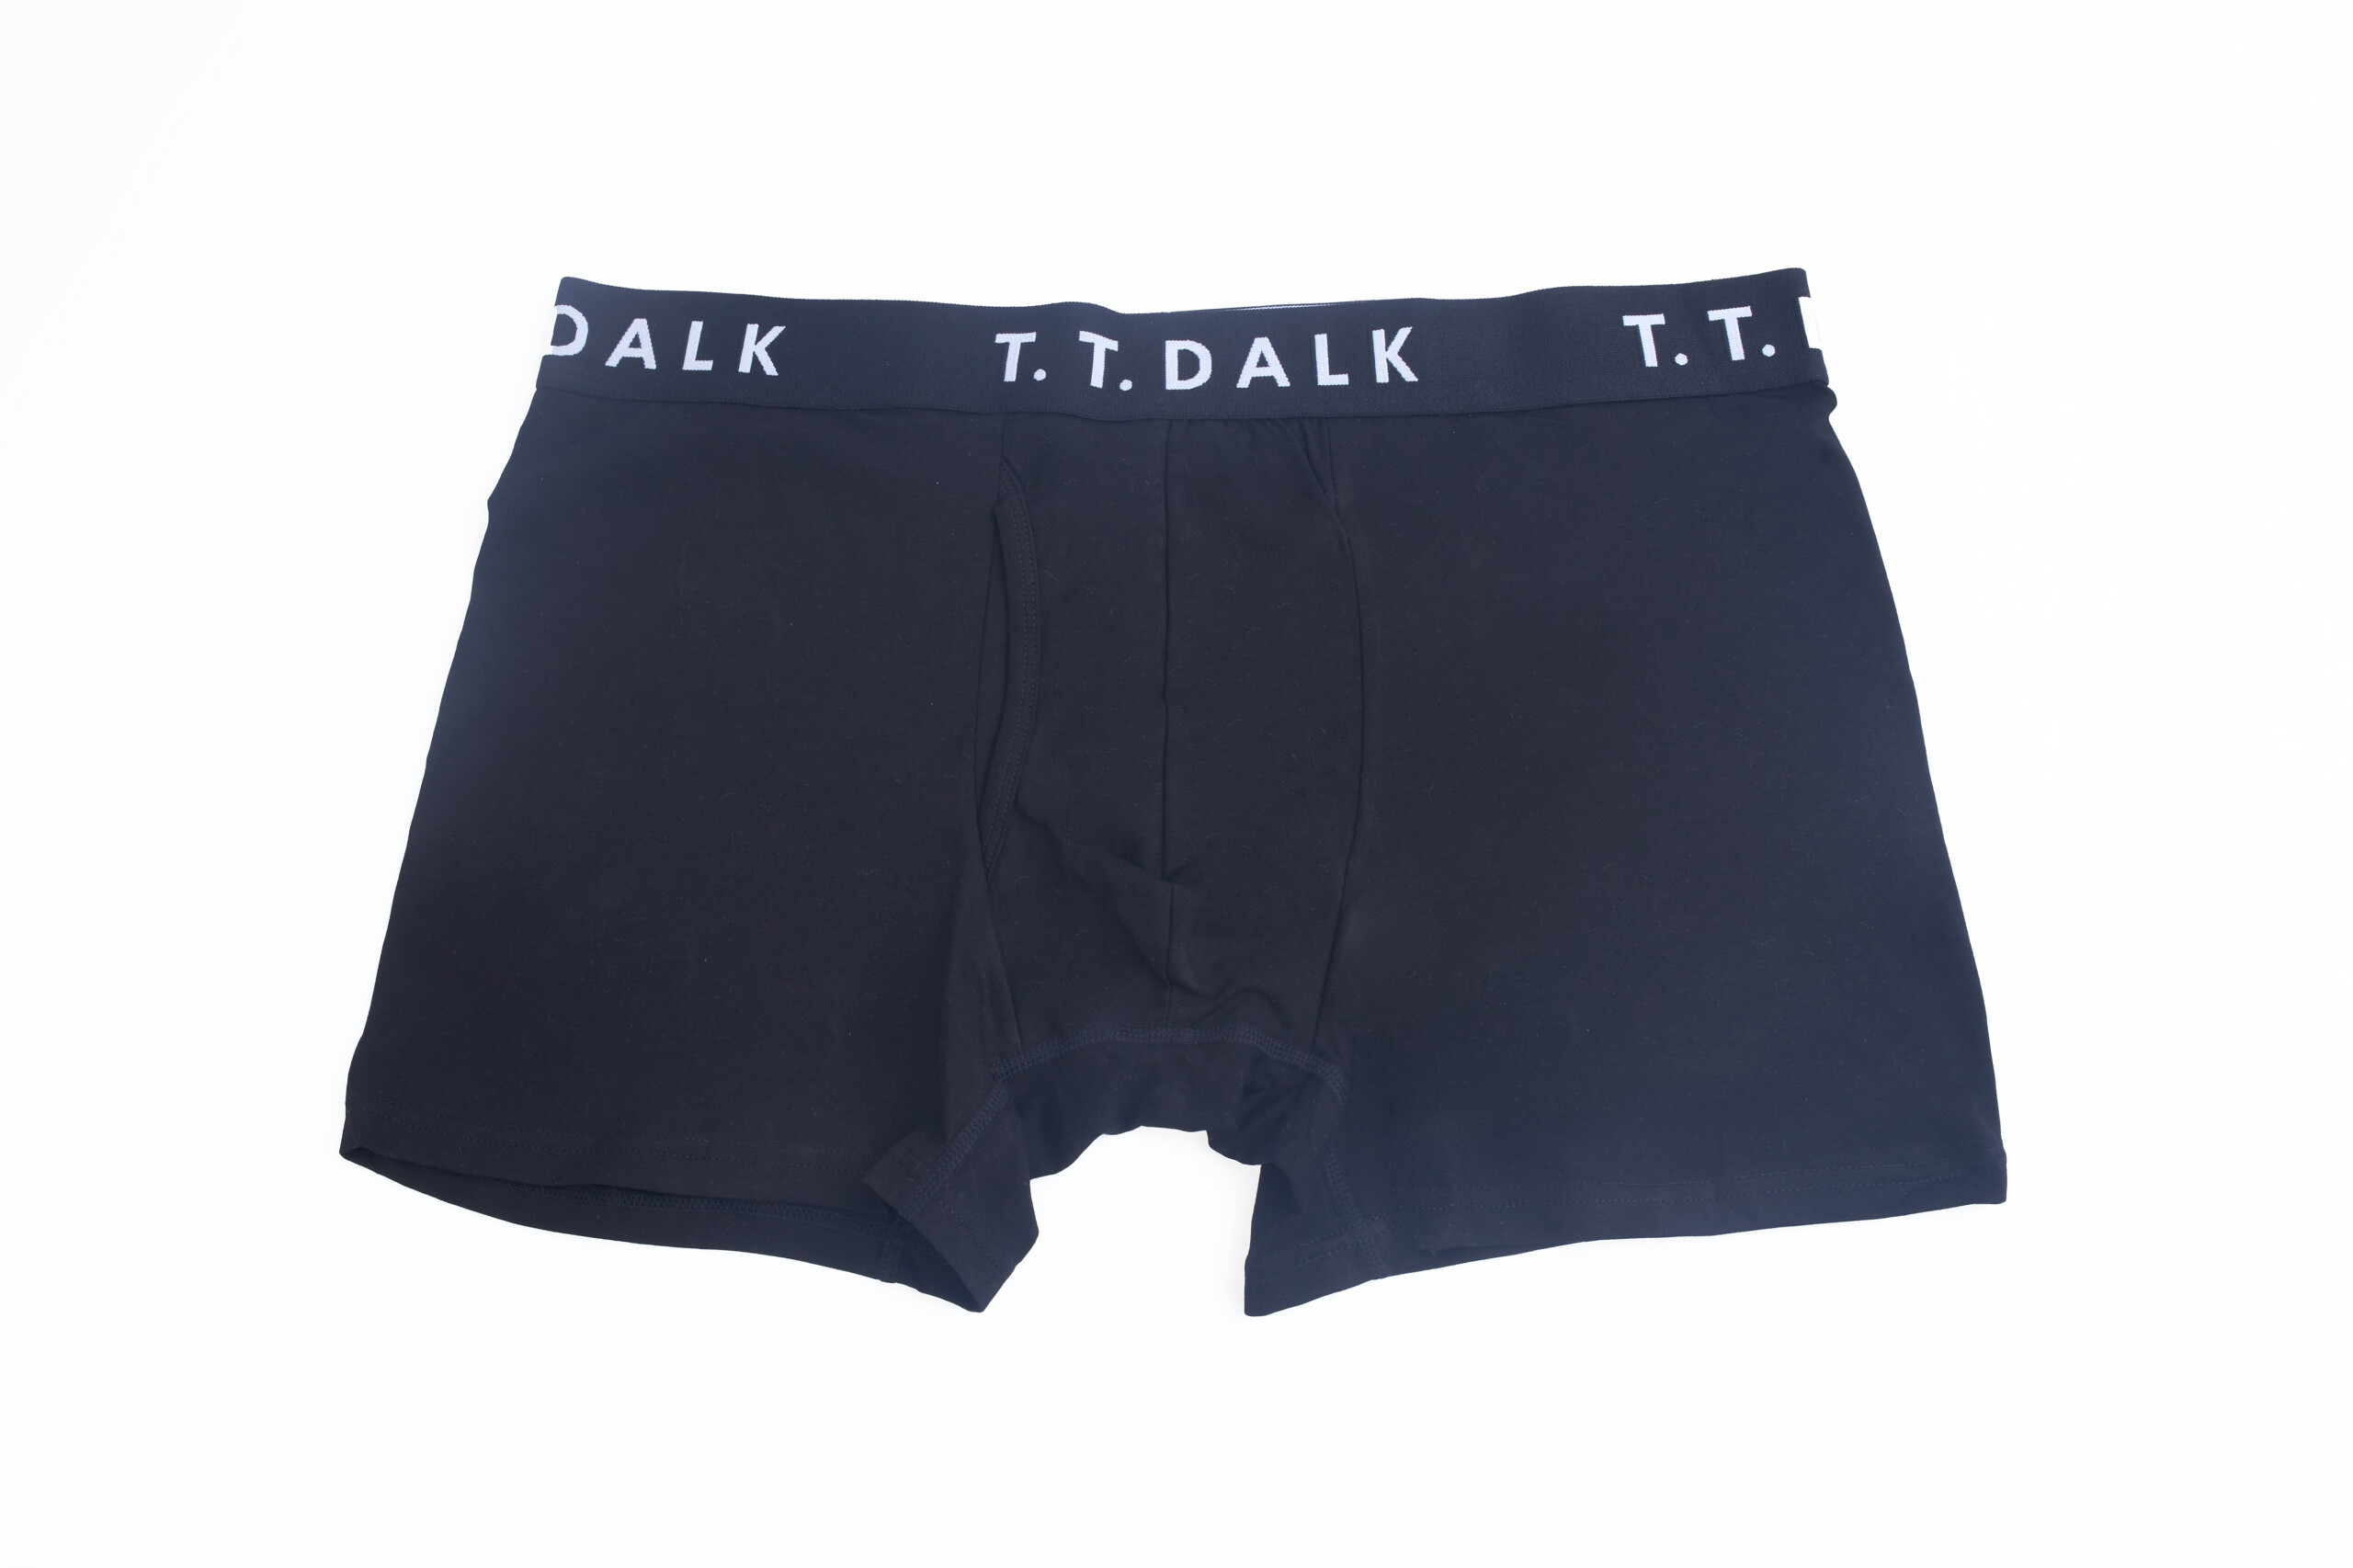 Black and Orange 2 in 1 Underwear - T.T.Dalk Nigeria